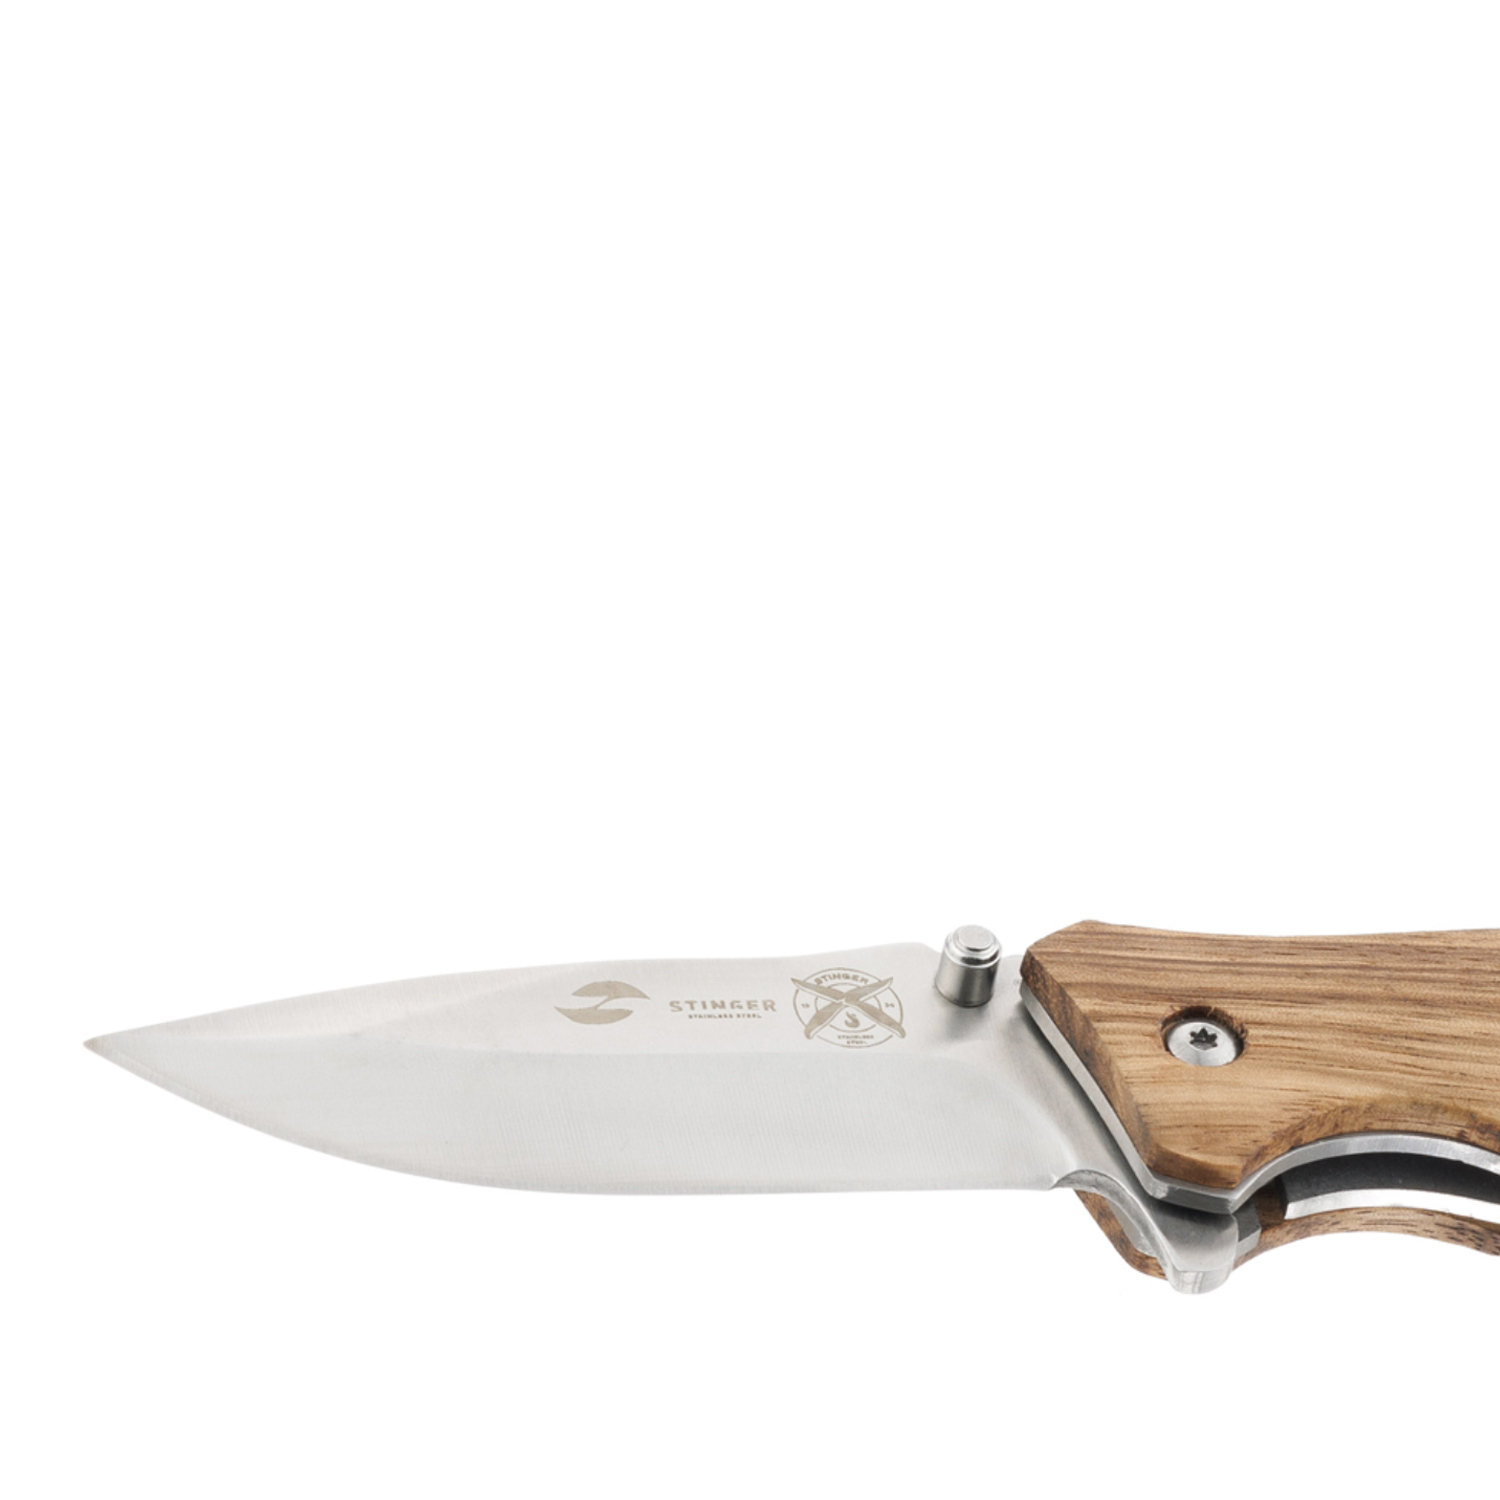 Нож Stinger Knives 110 мм рукоять дерево/сталь Серебристый/Светло-Коричневый